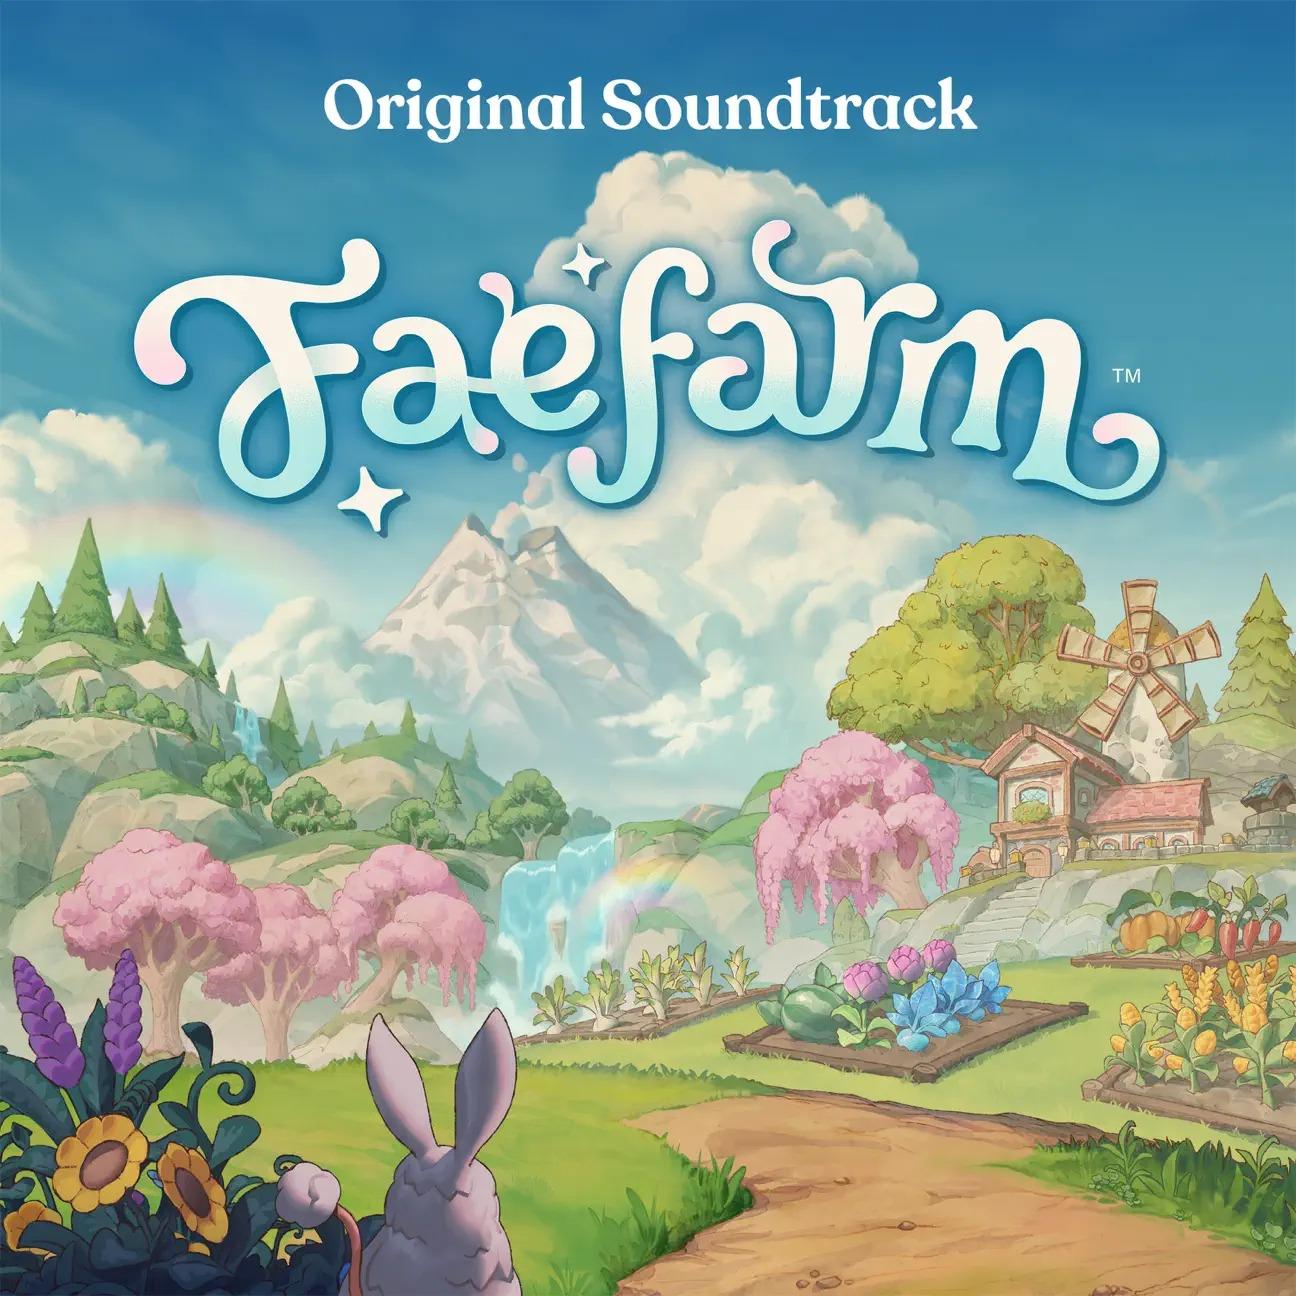 Fae Farm (Original Video Game Soundtrack)